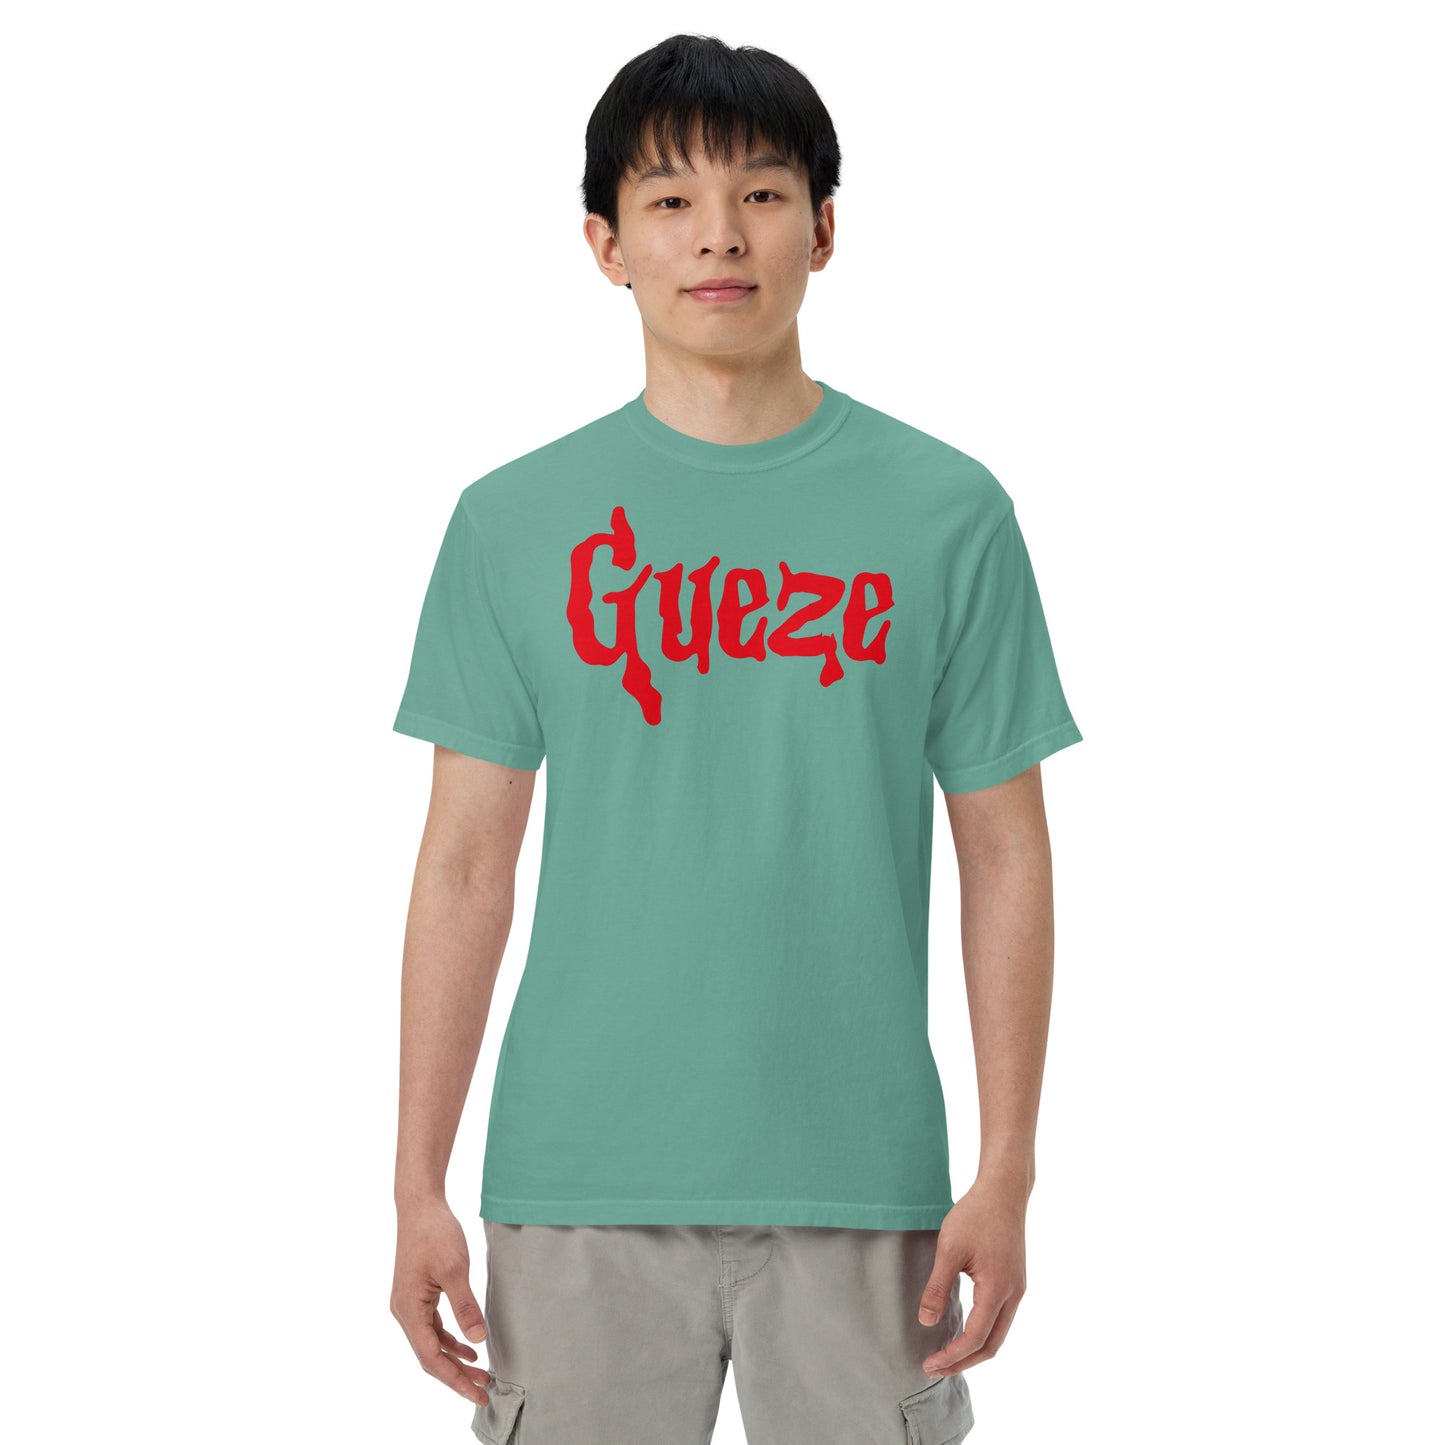 Gueze Blood red heavyweight t-shirt Unisex